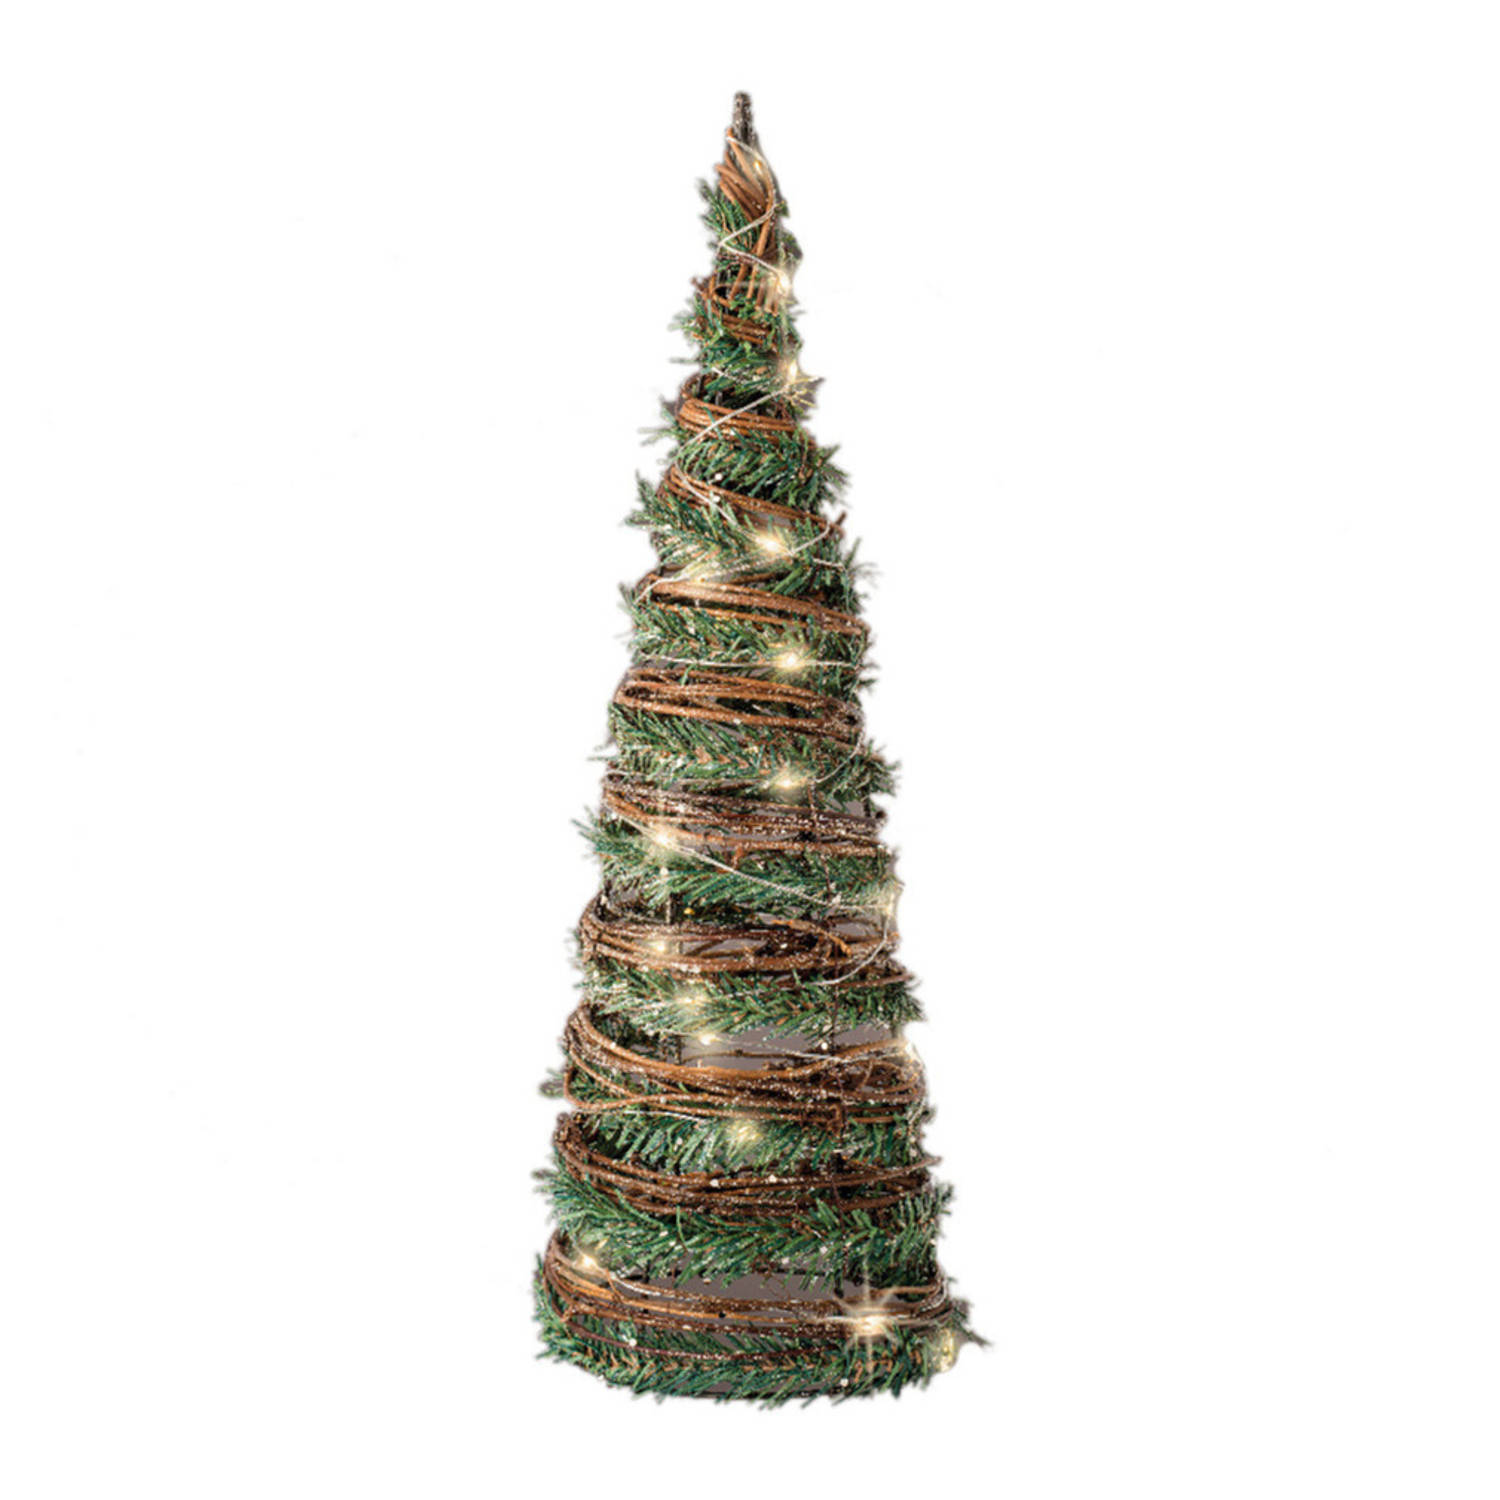 Kerstverlichting figuren Led kegel kerstboom rotan lamp 60 cm - Verlichte kegels/kegelvorm bomen/kerstbomen/kegelkerstbomen